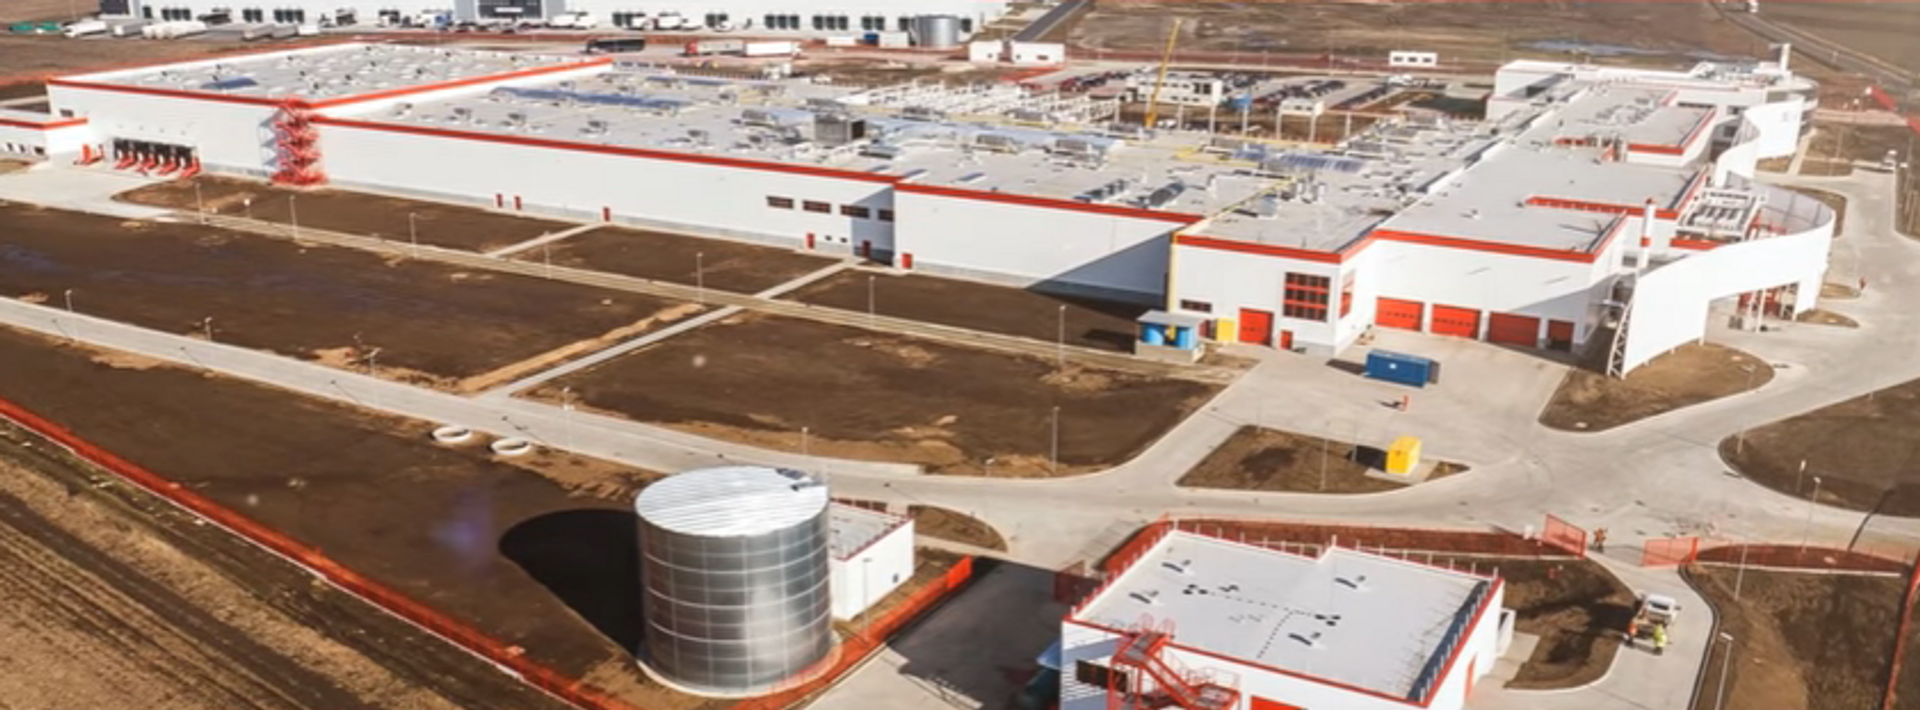  Nestlé PURINA PetCare za 150 milionów zł rozbuduje swoją fabrykę. Będą nowe miejsca pracy